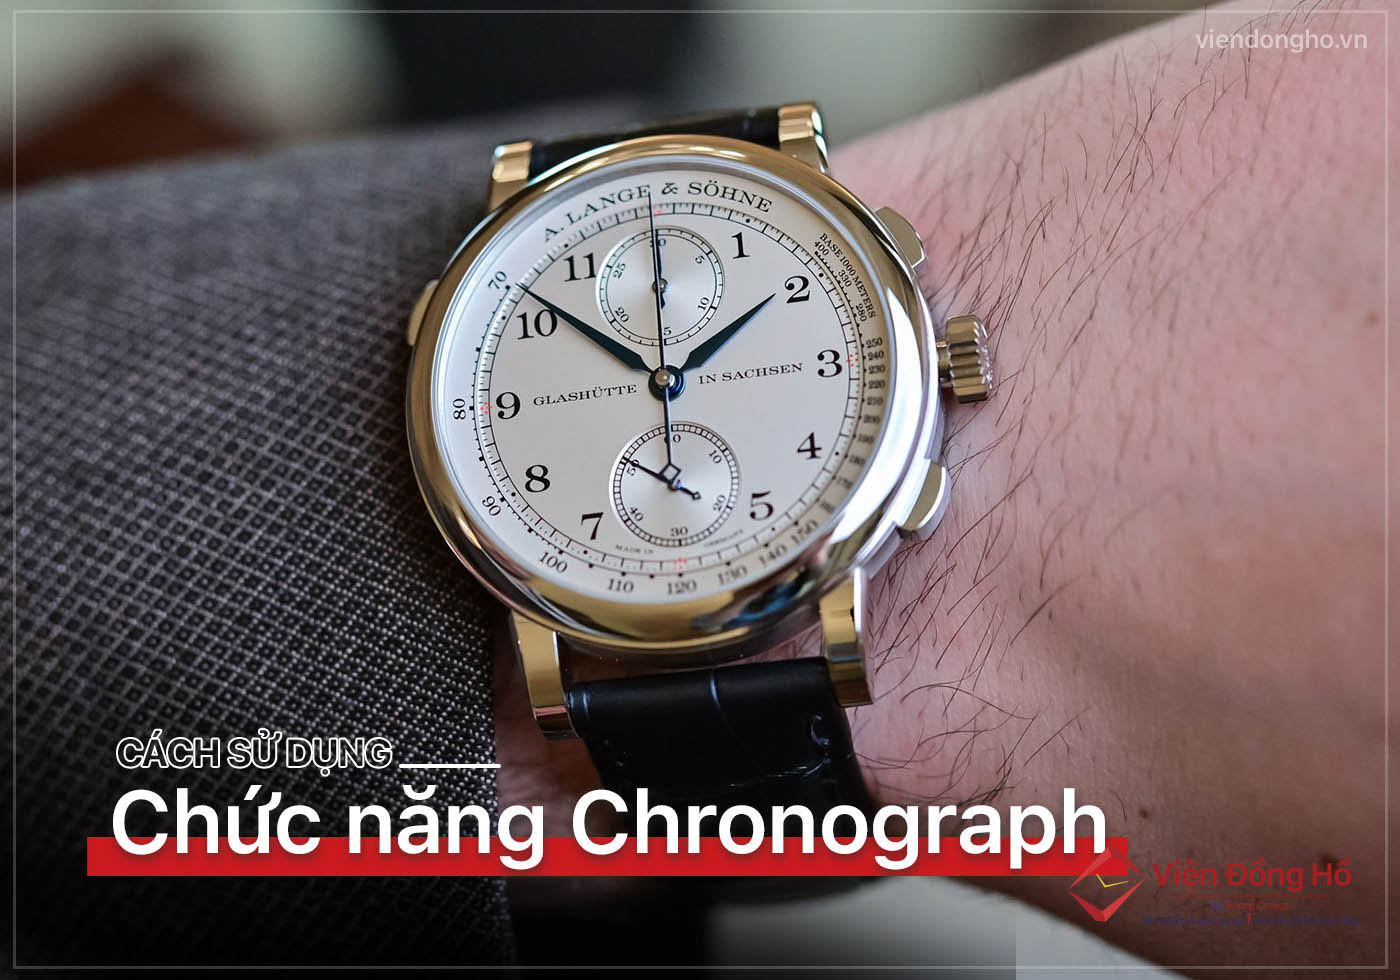 Chronograph la gi Cach su dung chuc nang Chronograph tren dong ho 7